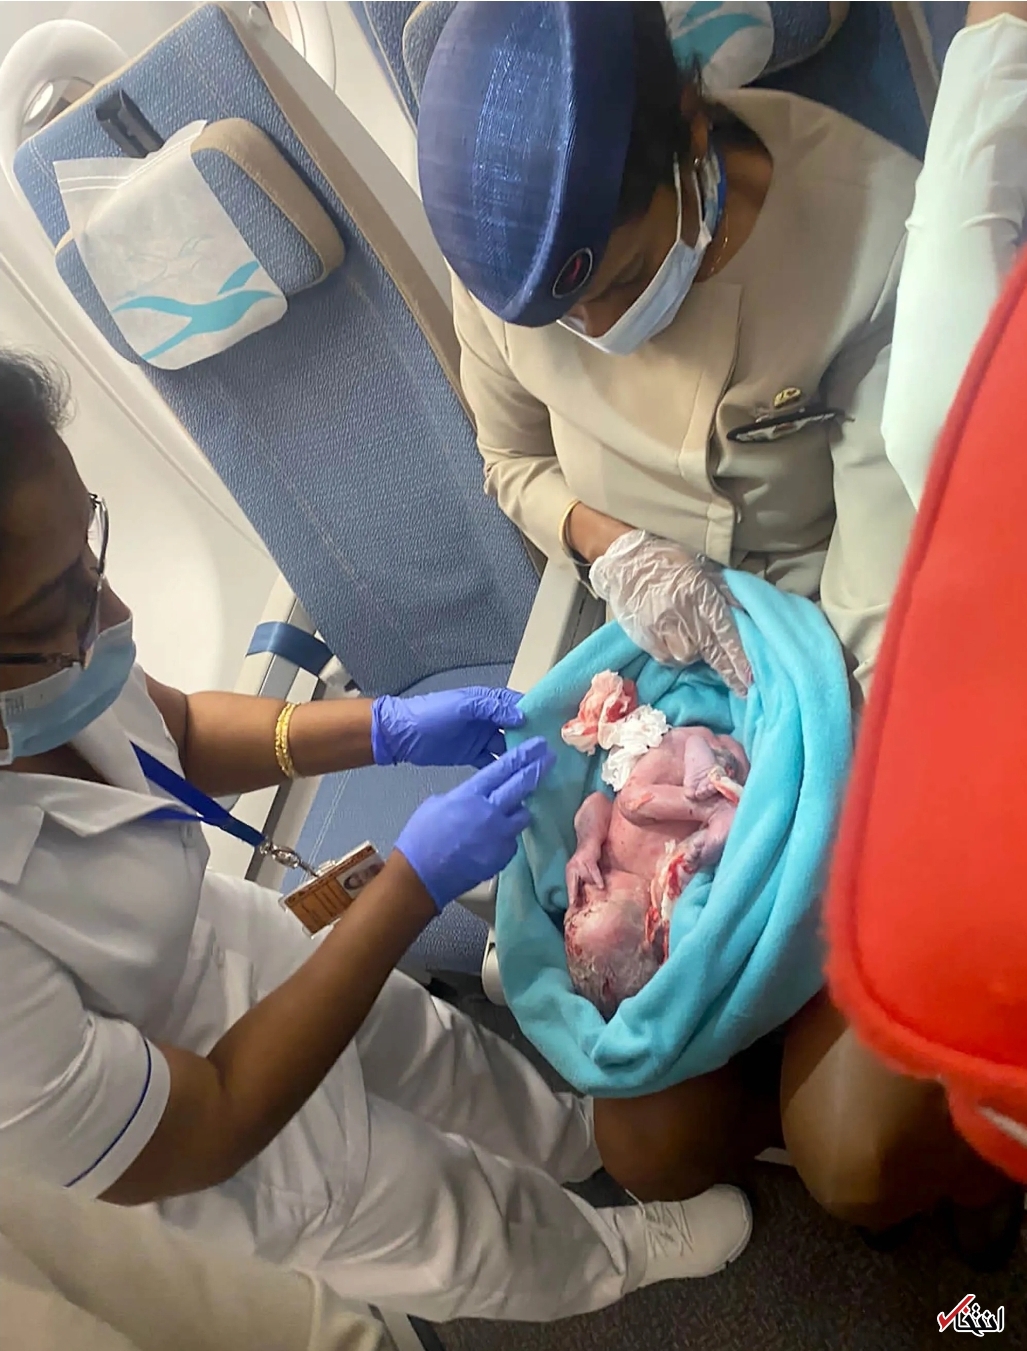 رها شدن یک نوزاد تازه متولد شده در سطل زباله سرویس بهداشتی هواپیما